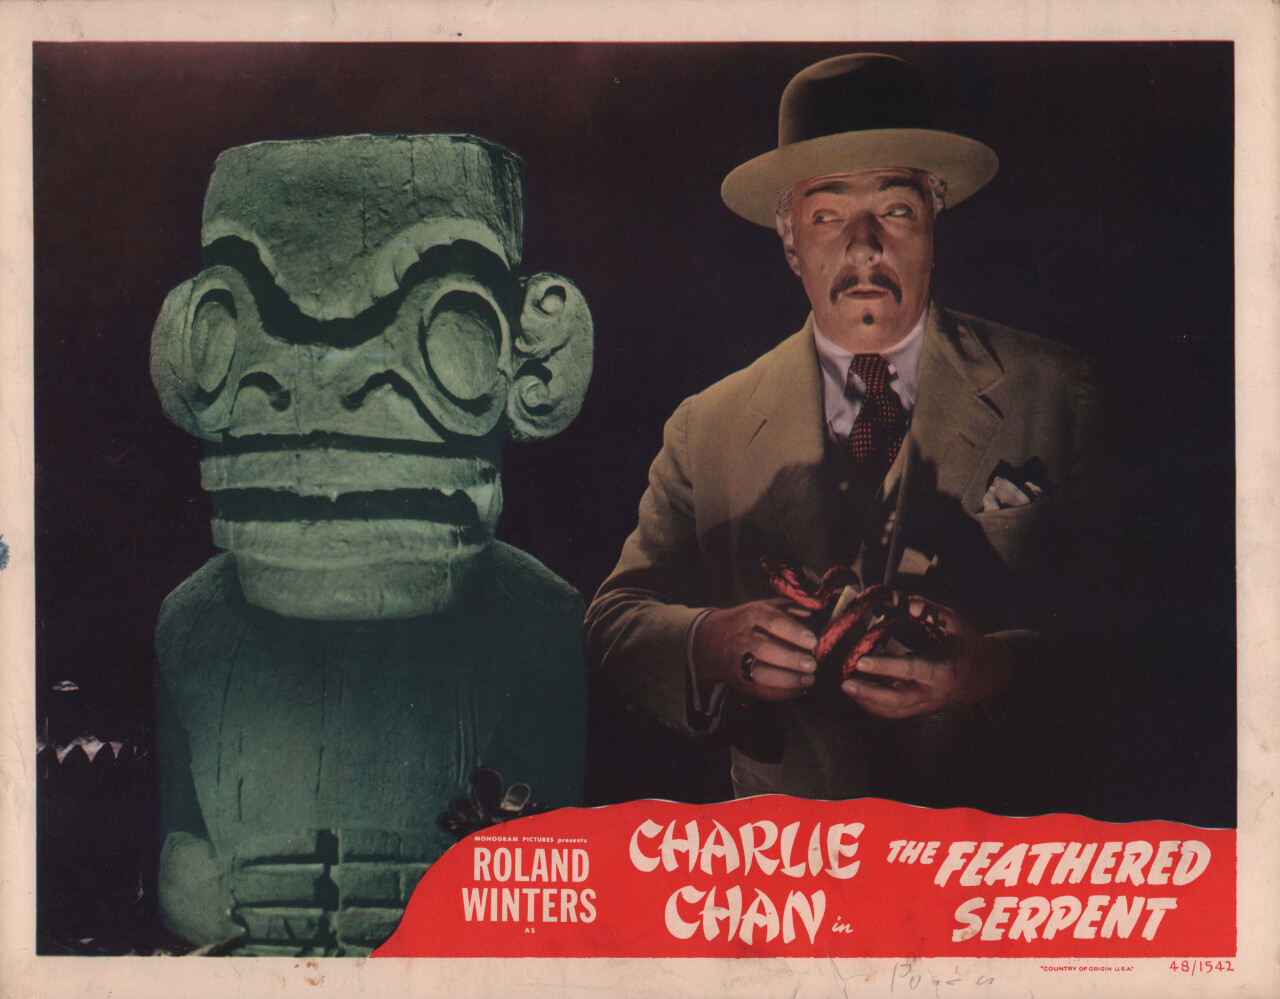 Пернатый змей (The Feathered Serpent, 1948), режиссёр Уильям Бодин, американский постер к фильму (ужасы, 1948 год)